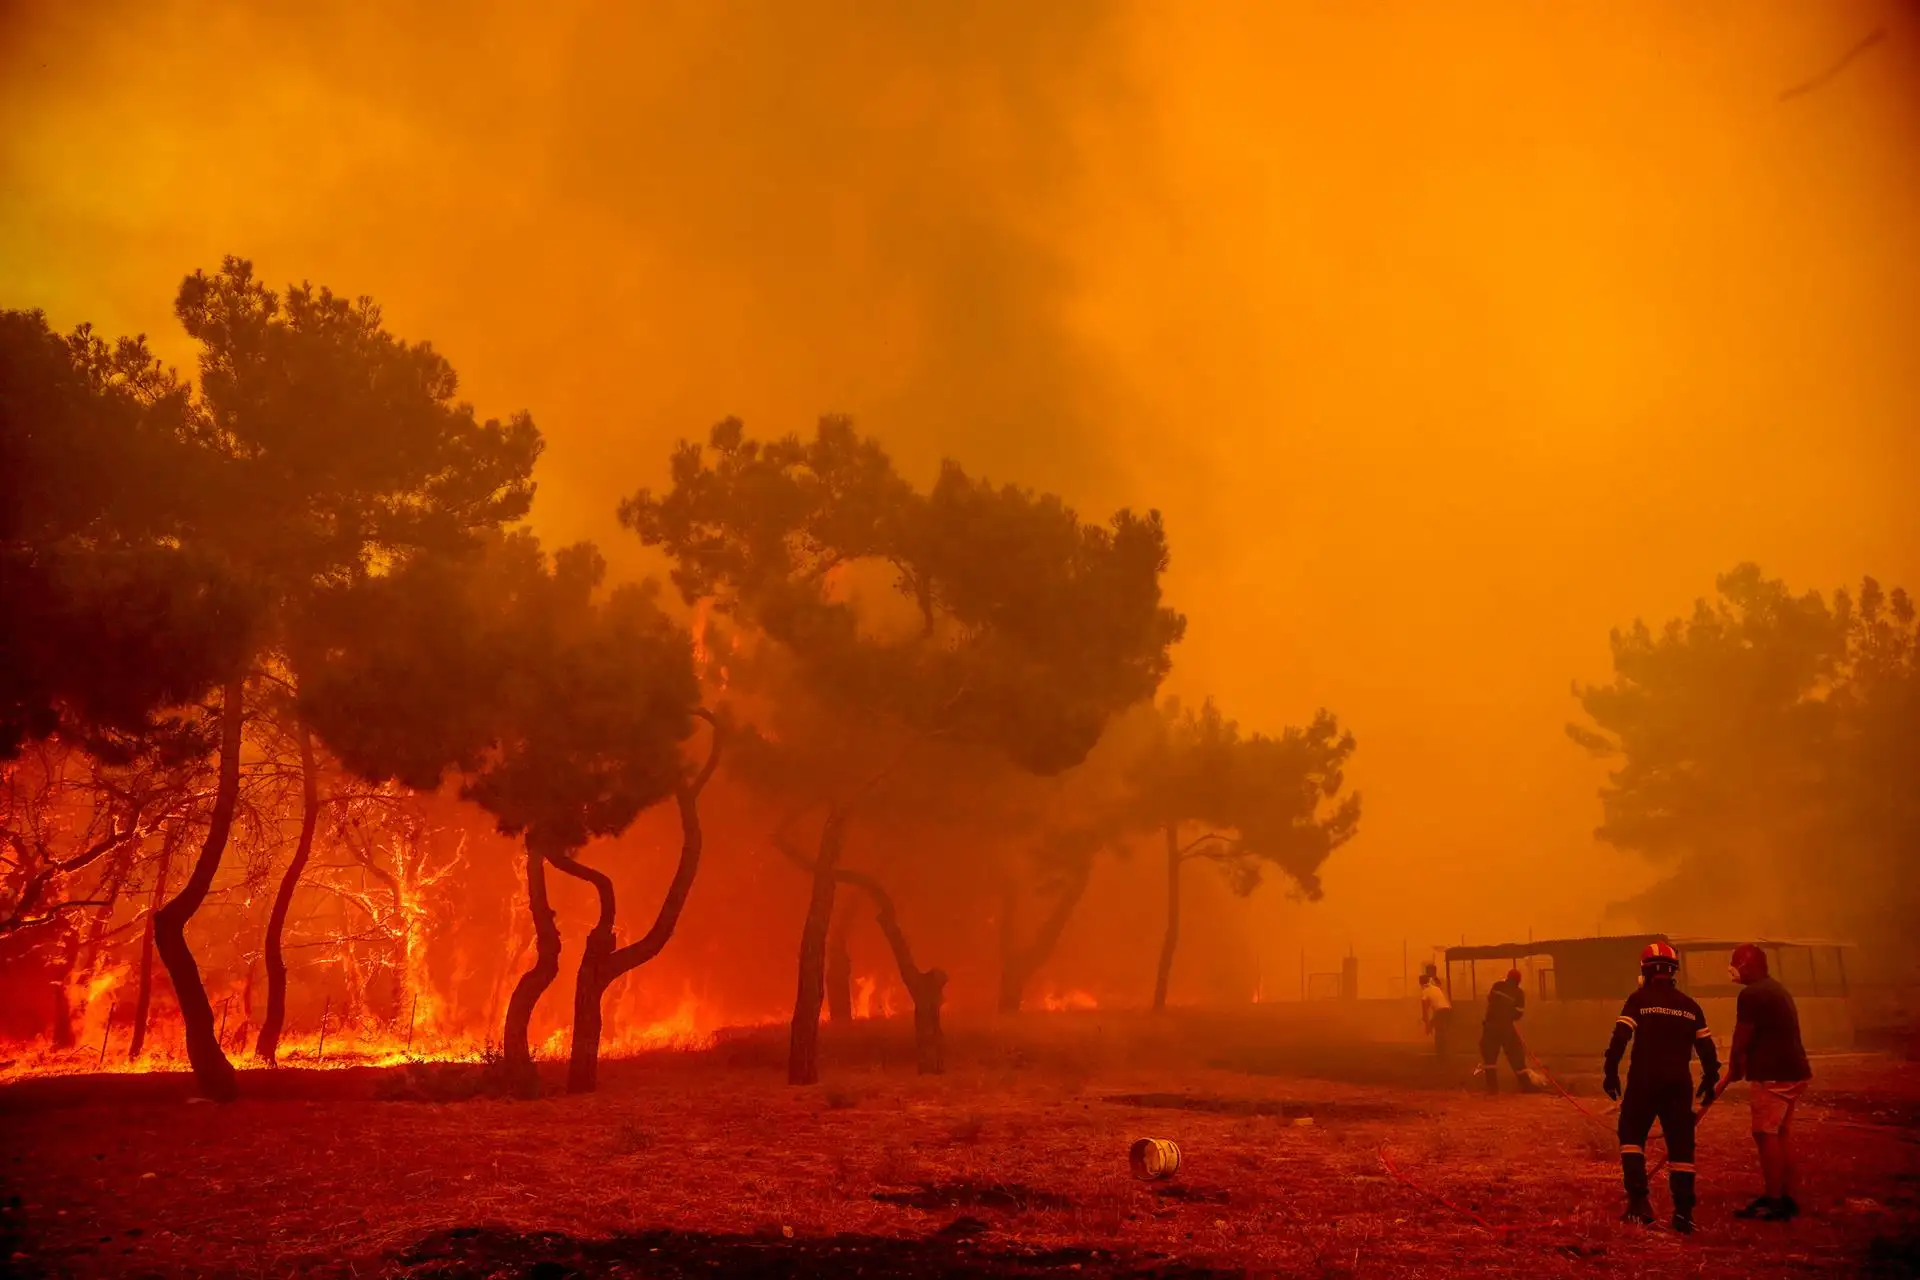 "España puede arder como Grecia". Abandono rural, cambio climático y falta de prevención. Incendio en Grecia 23 July 2022 / Foto: EP